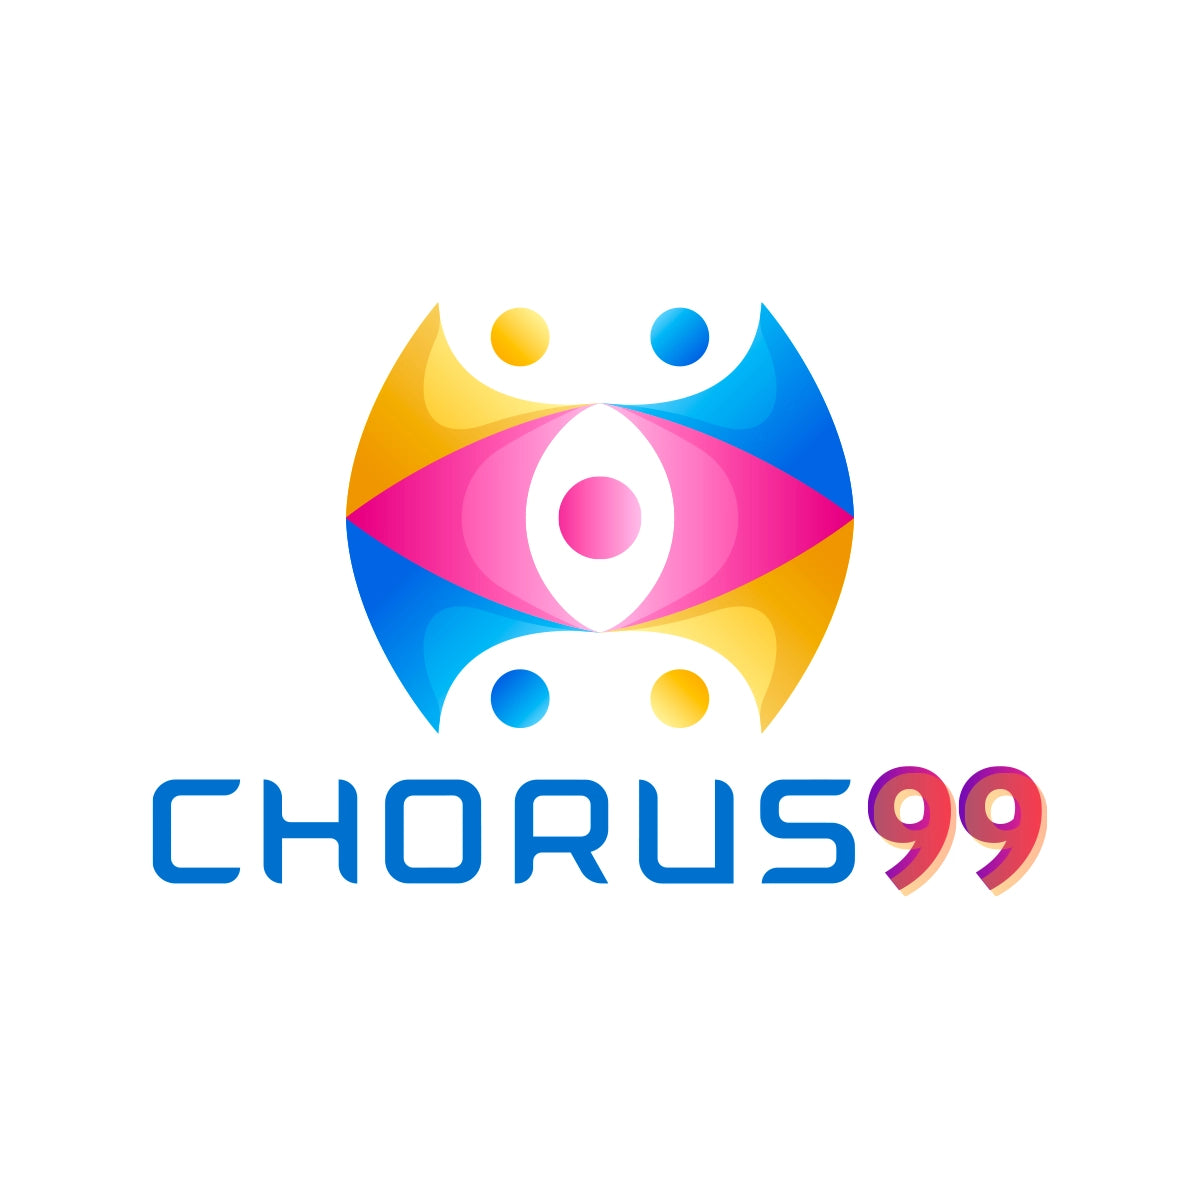 chorus99.com